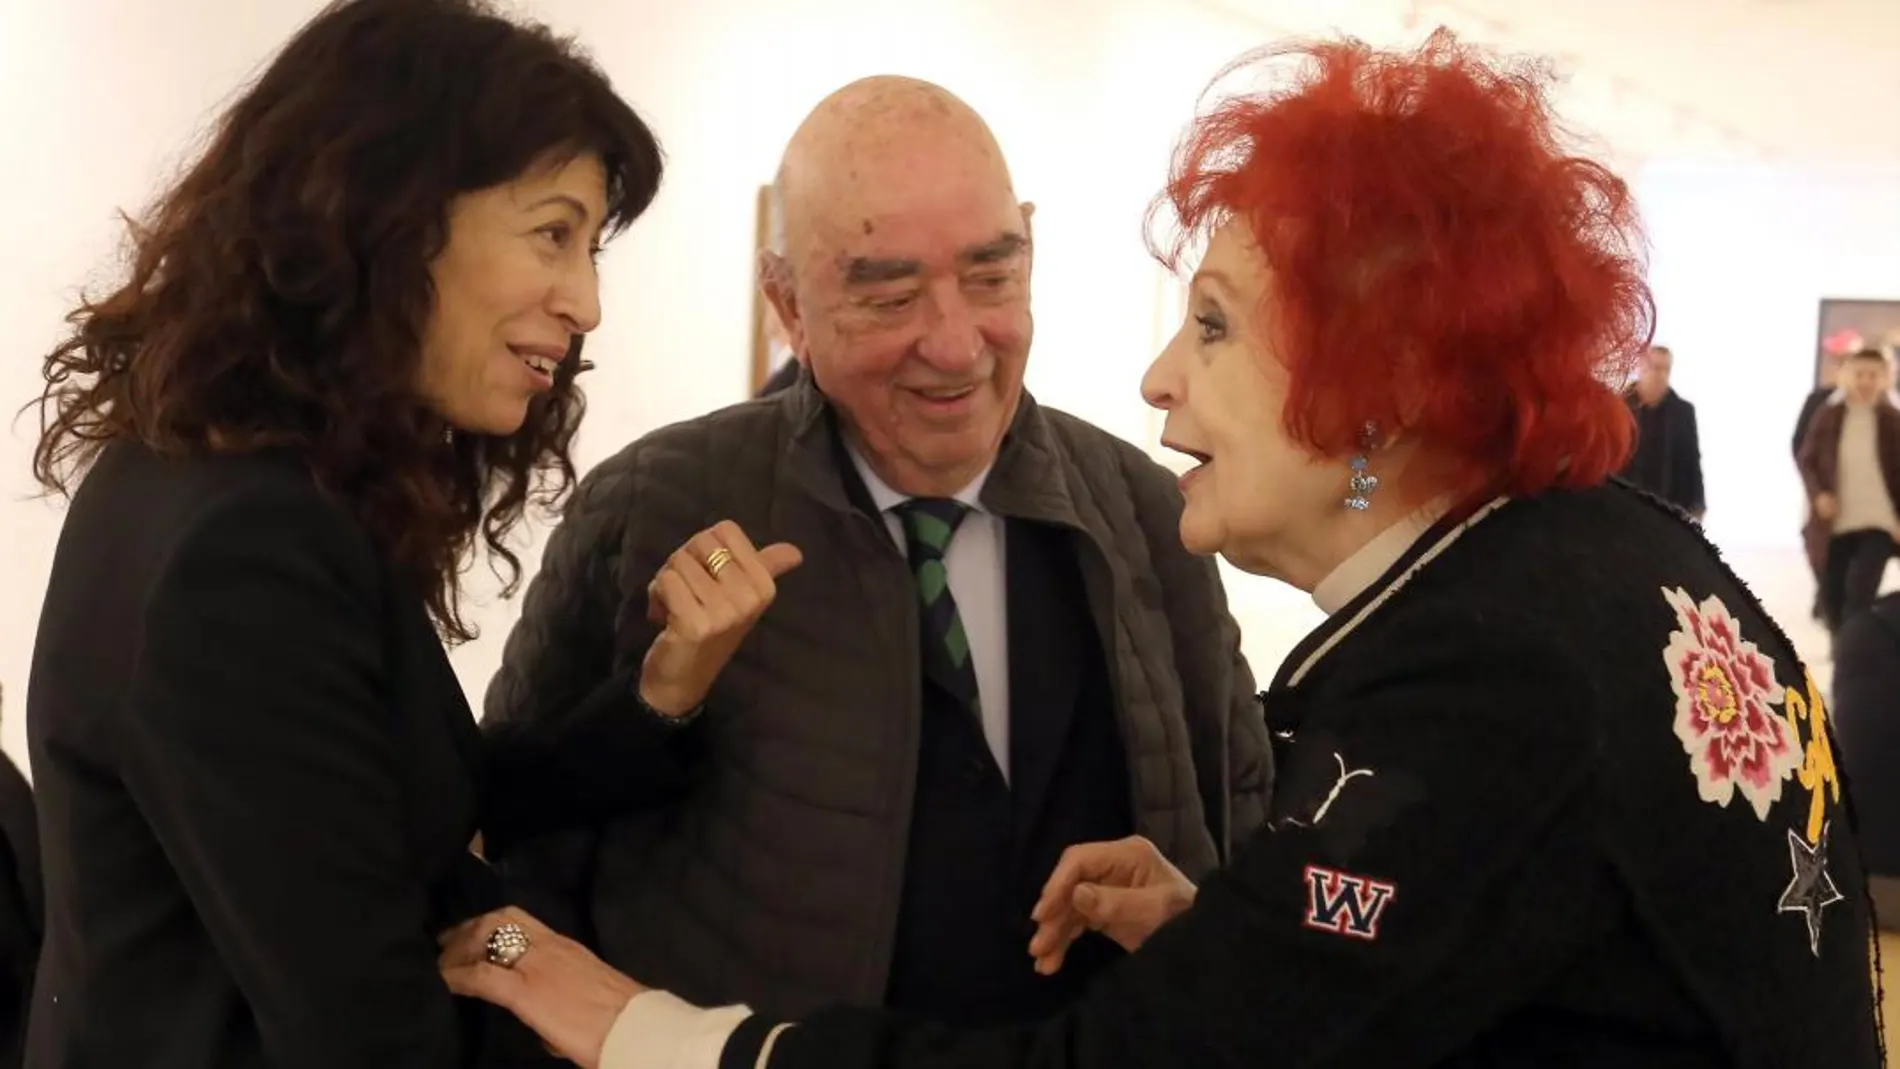 La galerista Juana de Aizpuru conversa con la concejala de Cultura y Turismo, Ana Redondo, y el presidente de la Colección Arte Contemporáneo, José Lladó